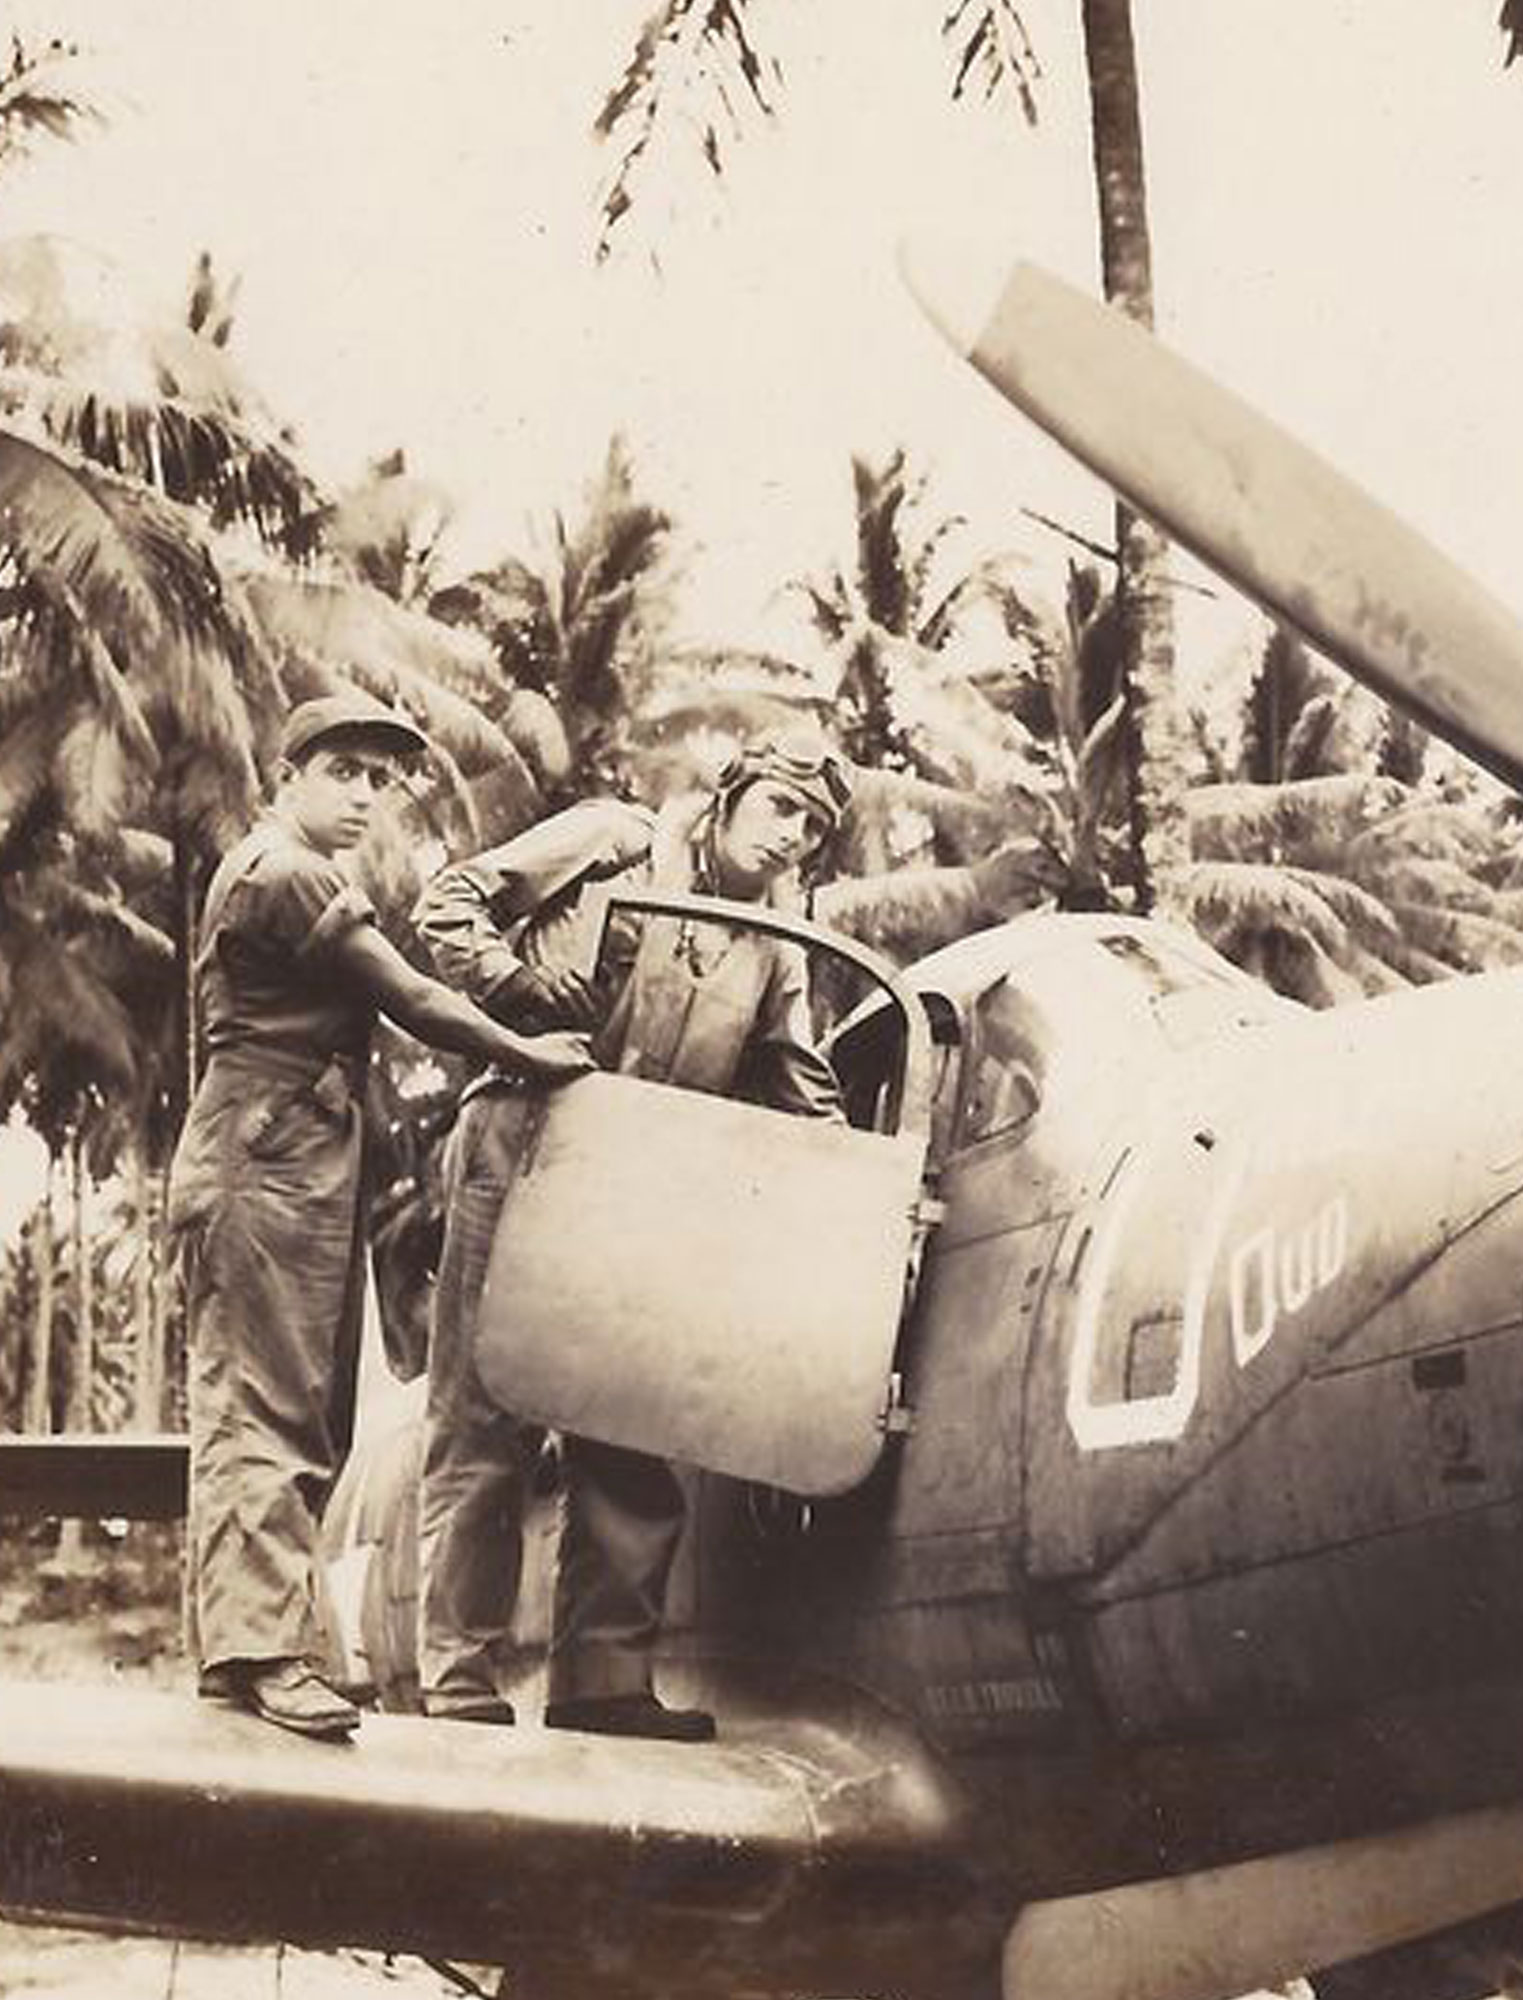 P-39 AIRACOBRA ENGINE COOLANT TEMPERATURE GAUGE